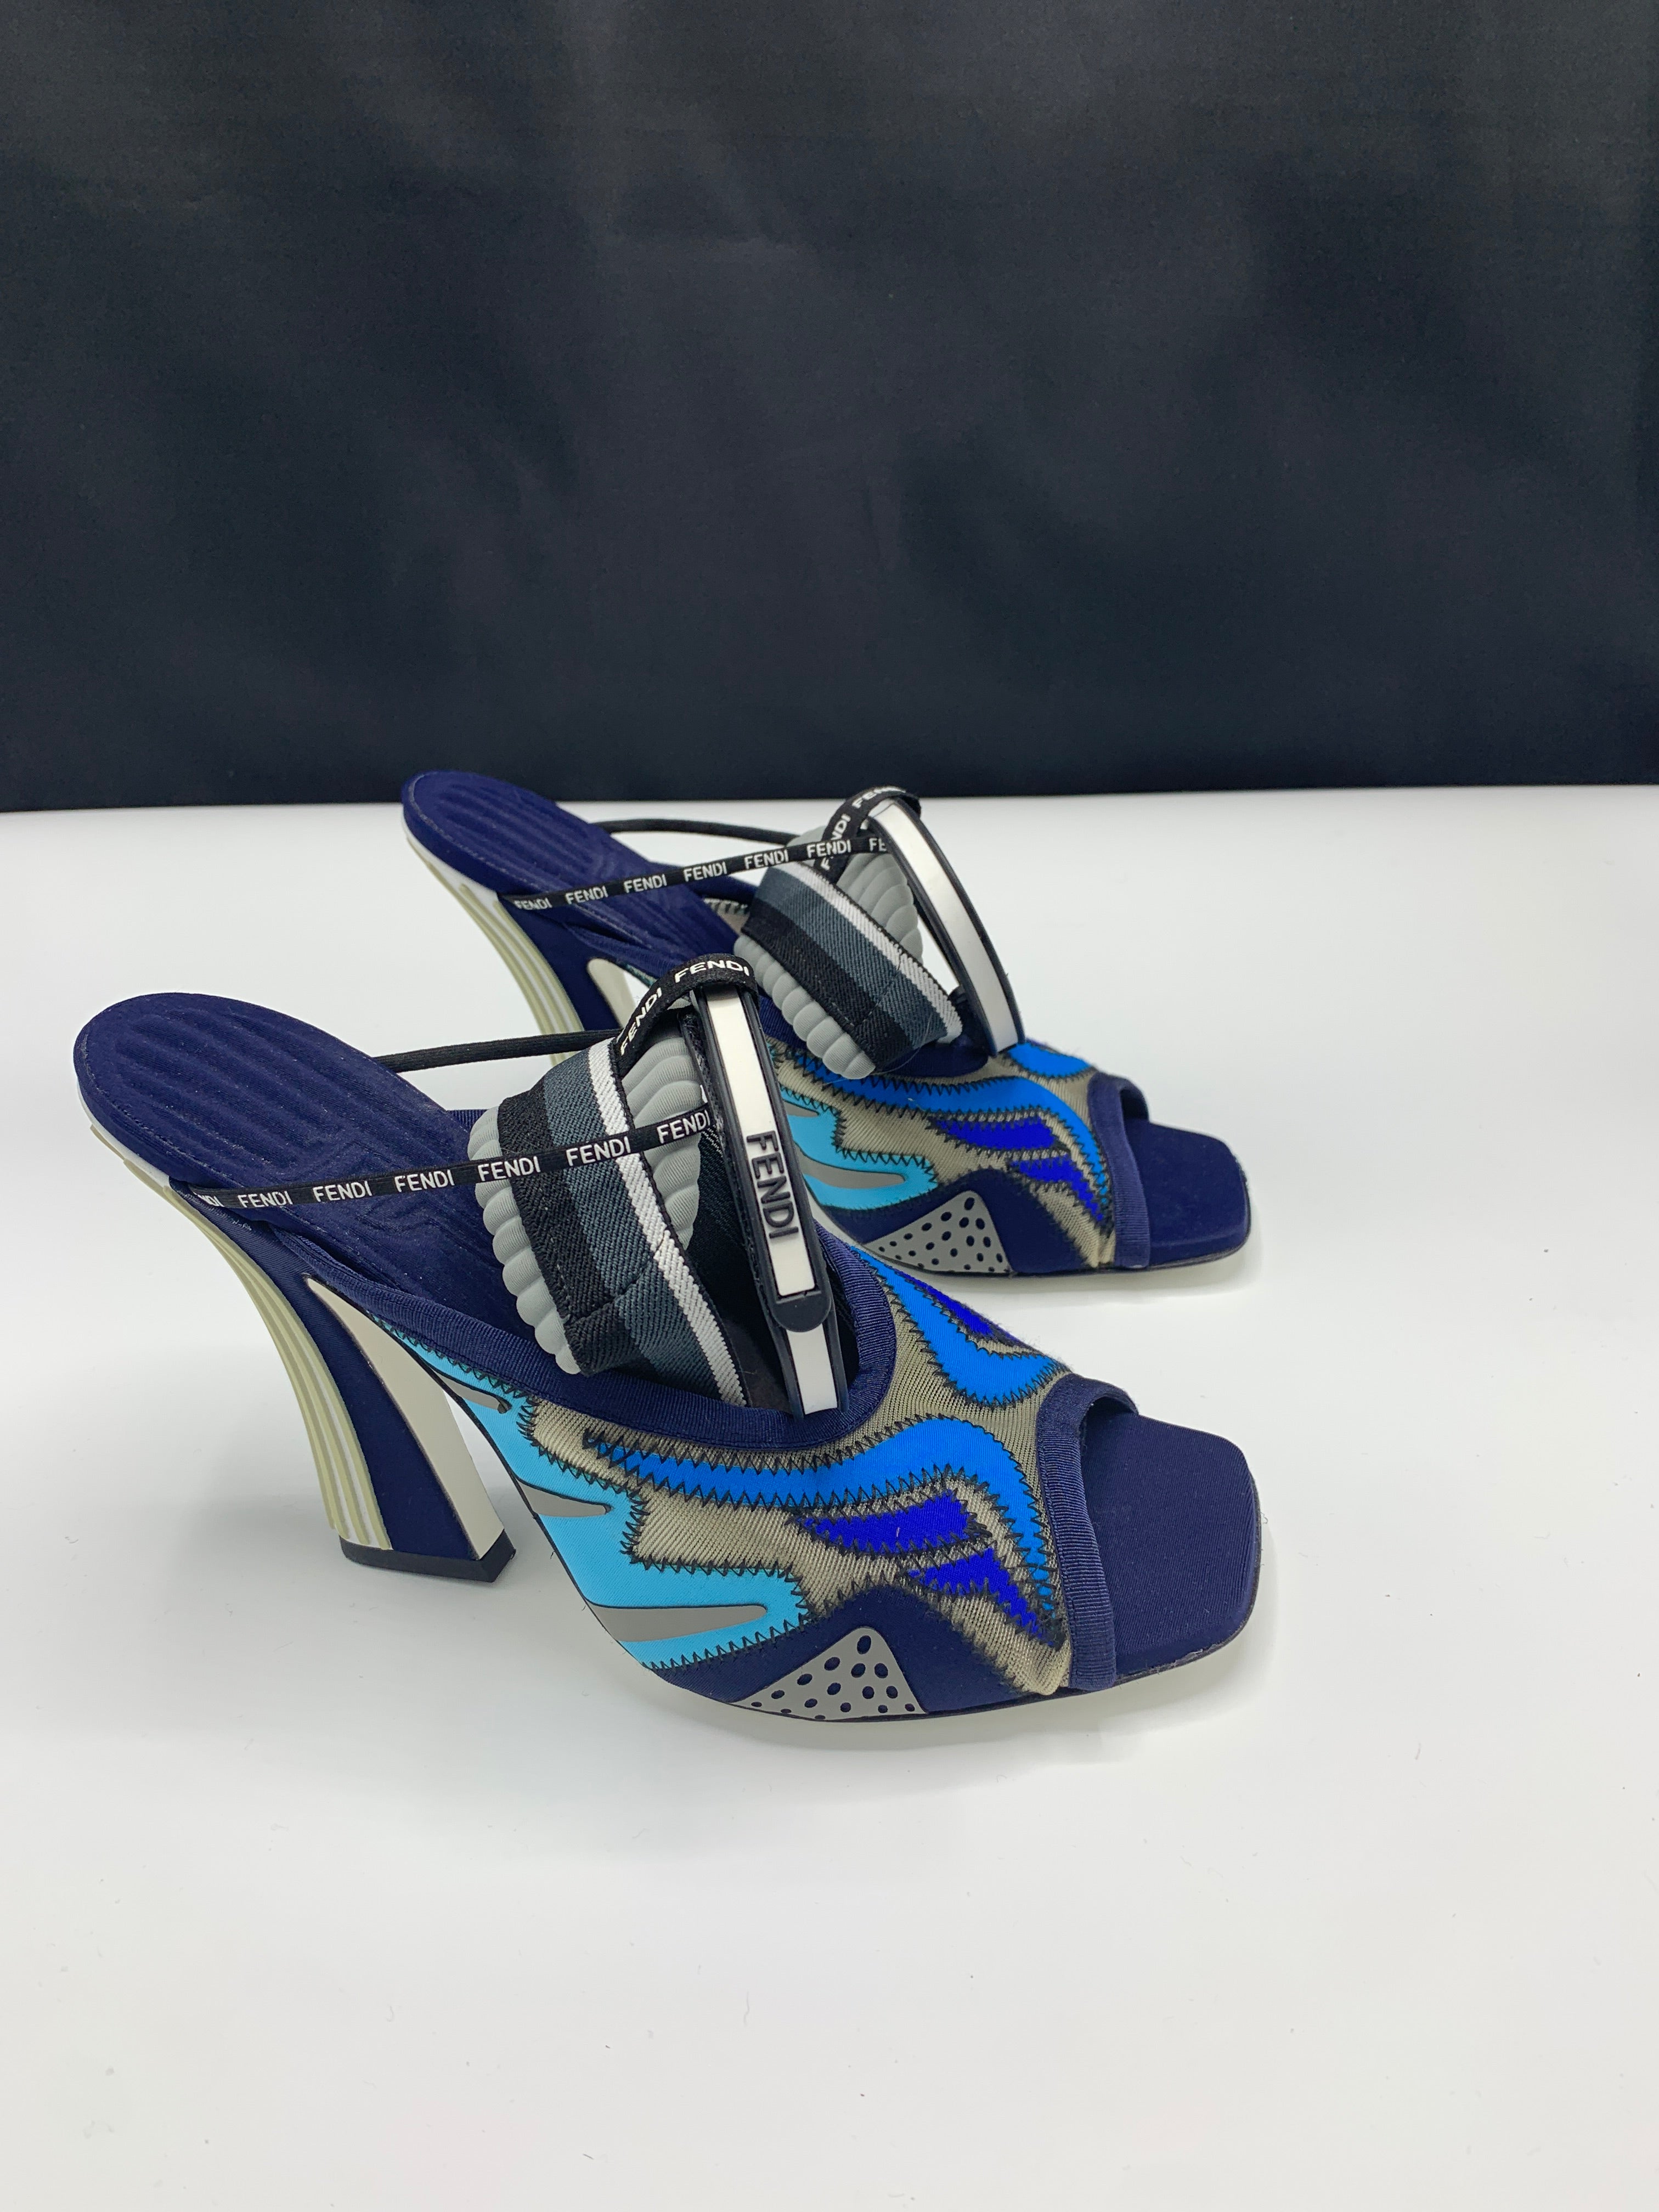 Fendi 2019 Runway shoes